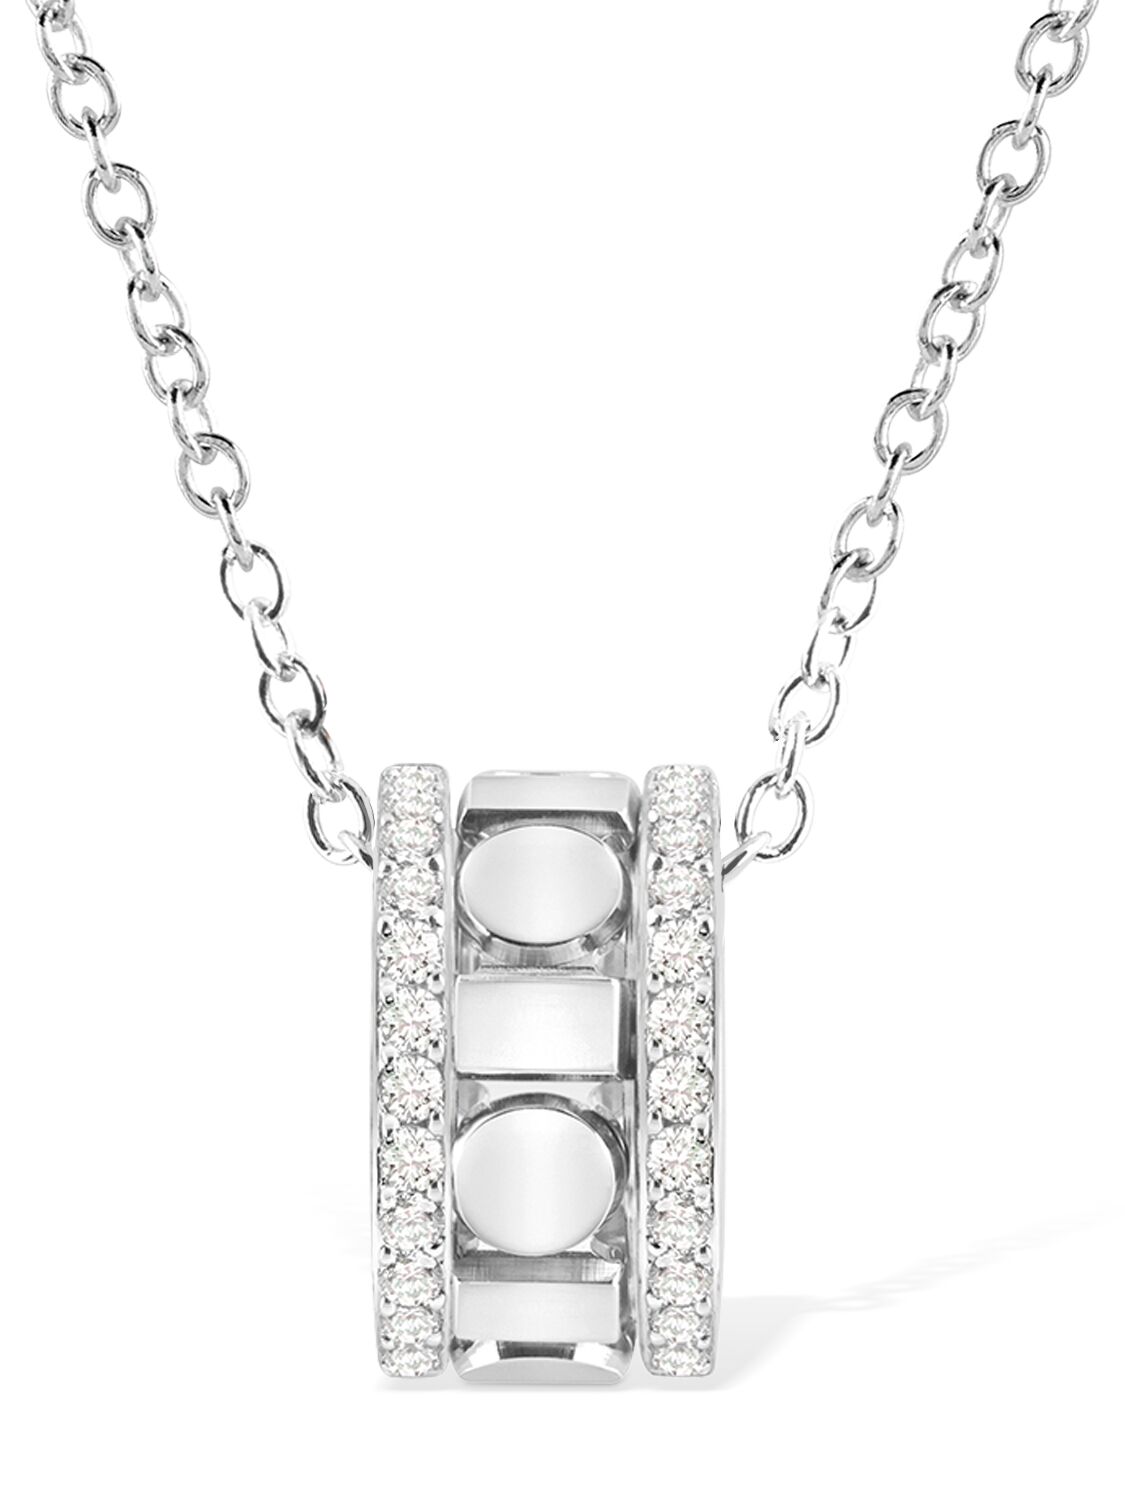 Image of Belle Époque 18kt & Diamond Necklace